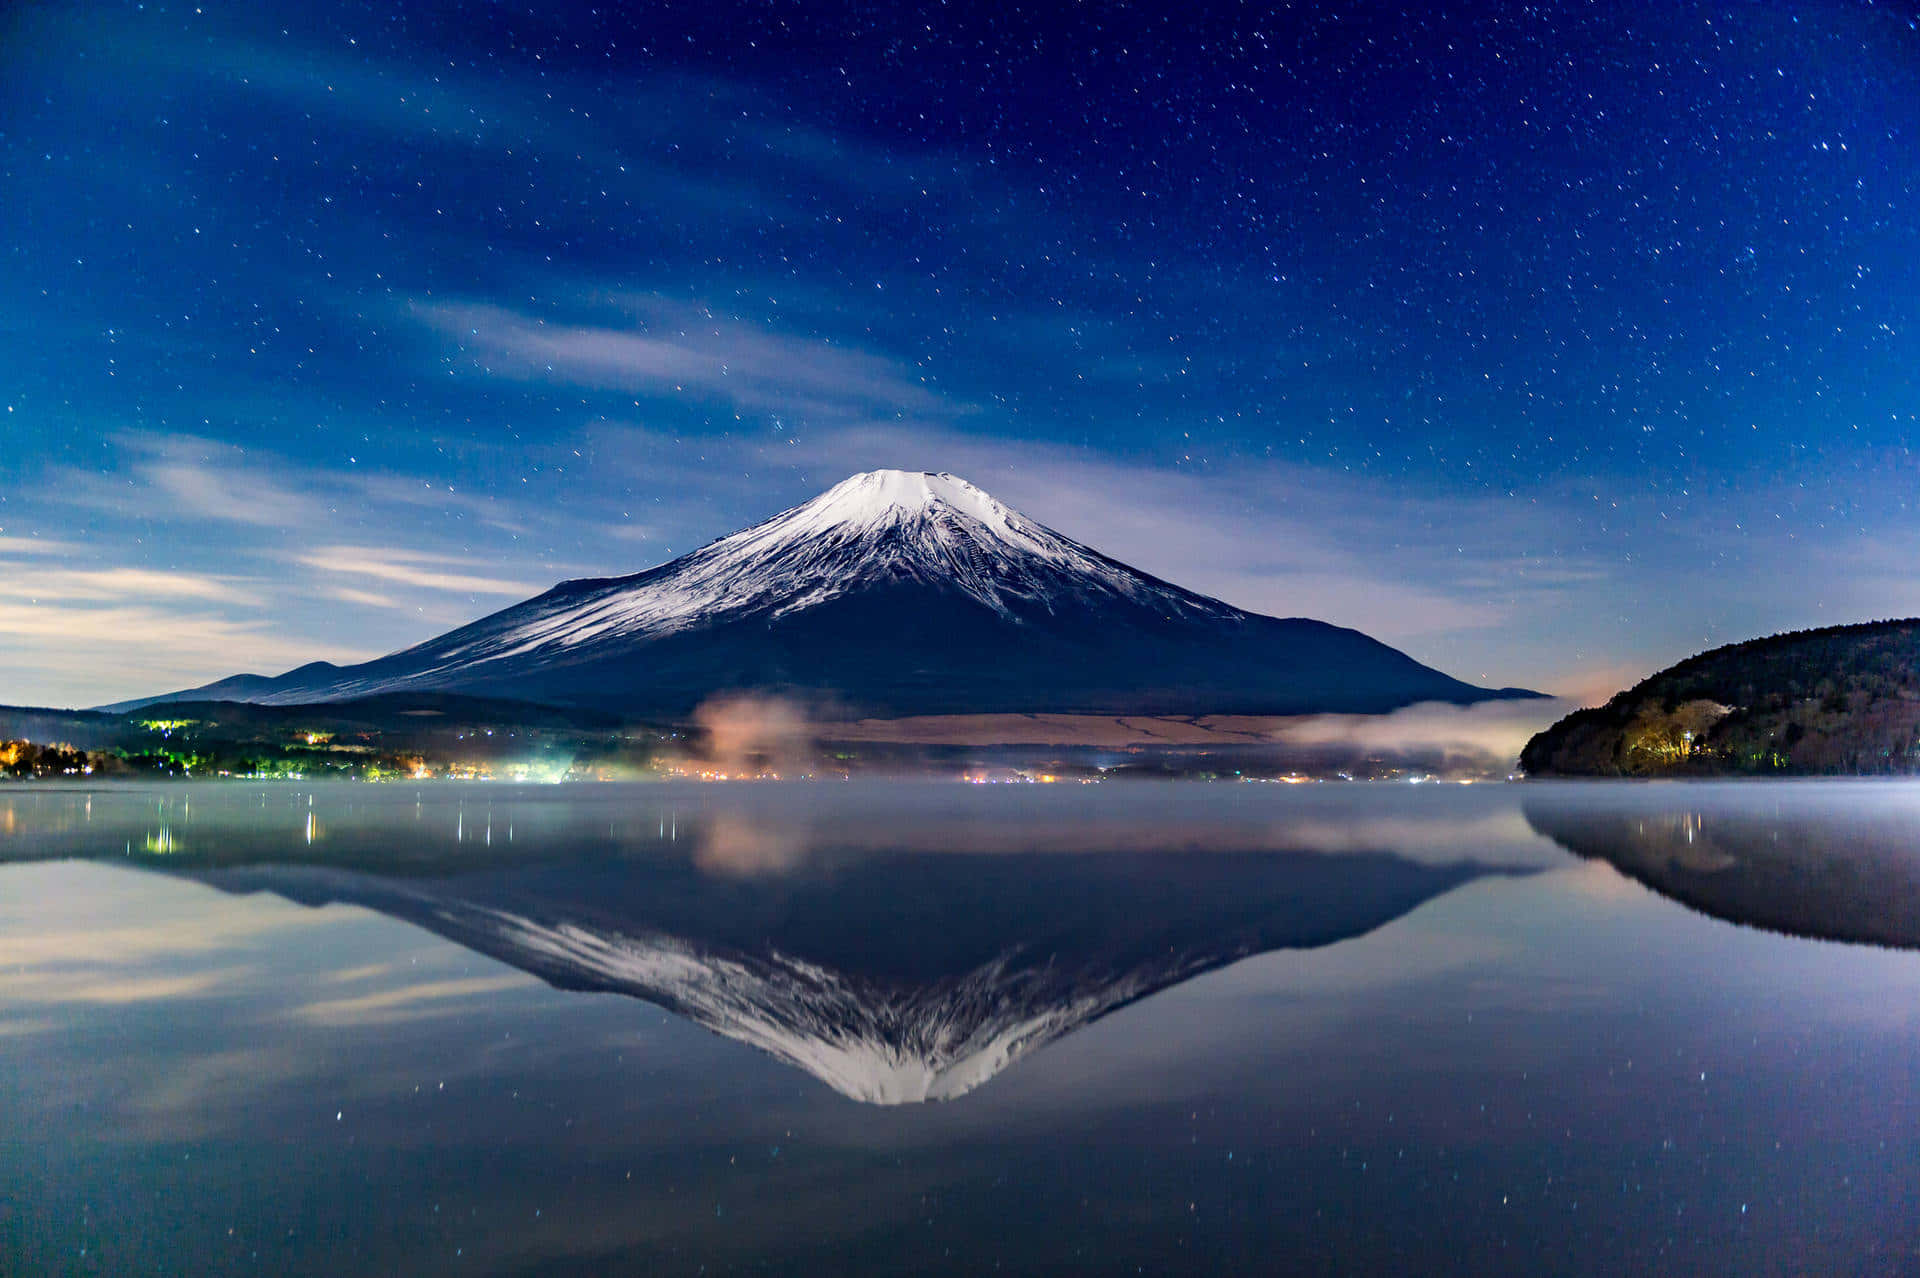 Cielonocturno Azul Sobre El Monte Fuji Fondo de pantalla